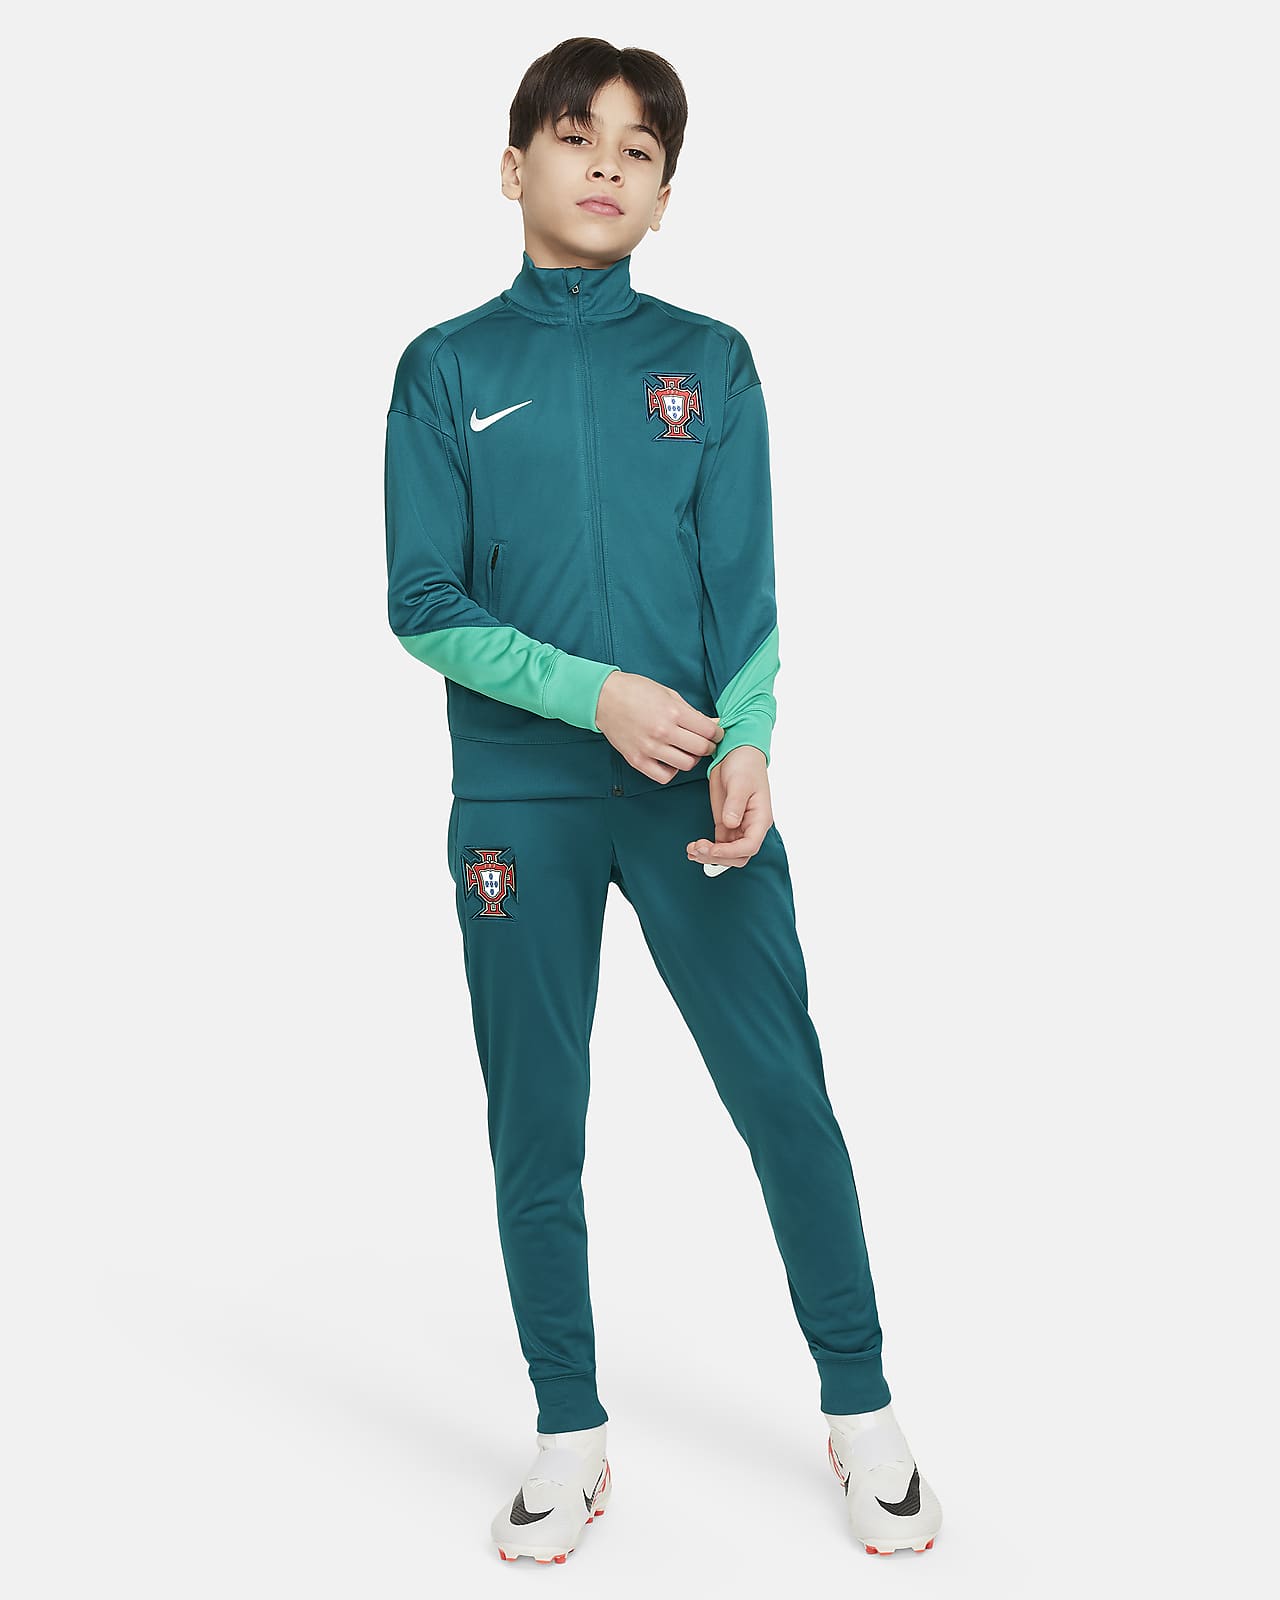 Portugal Strike Nike Dri-FIT knit voetbaltrainingspak voor kids